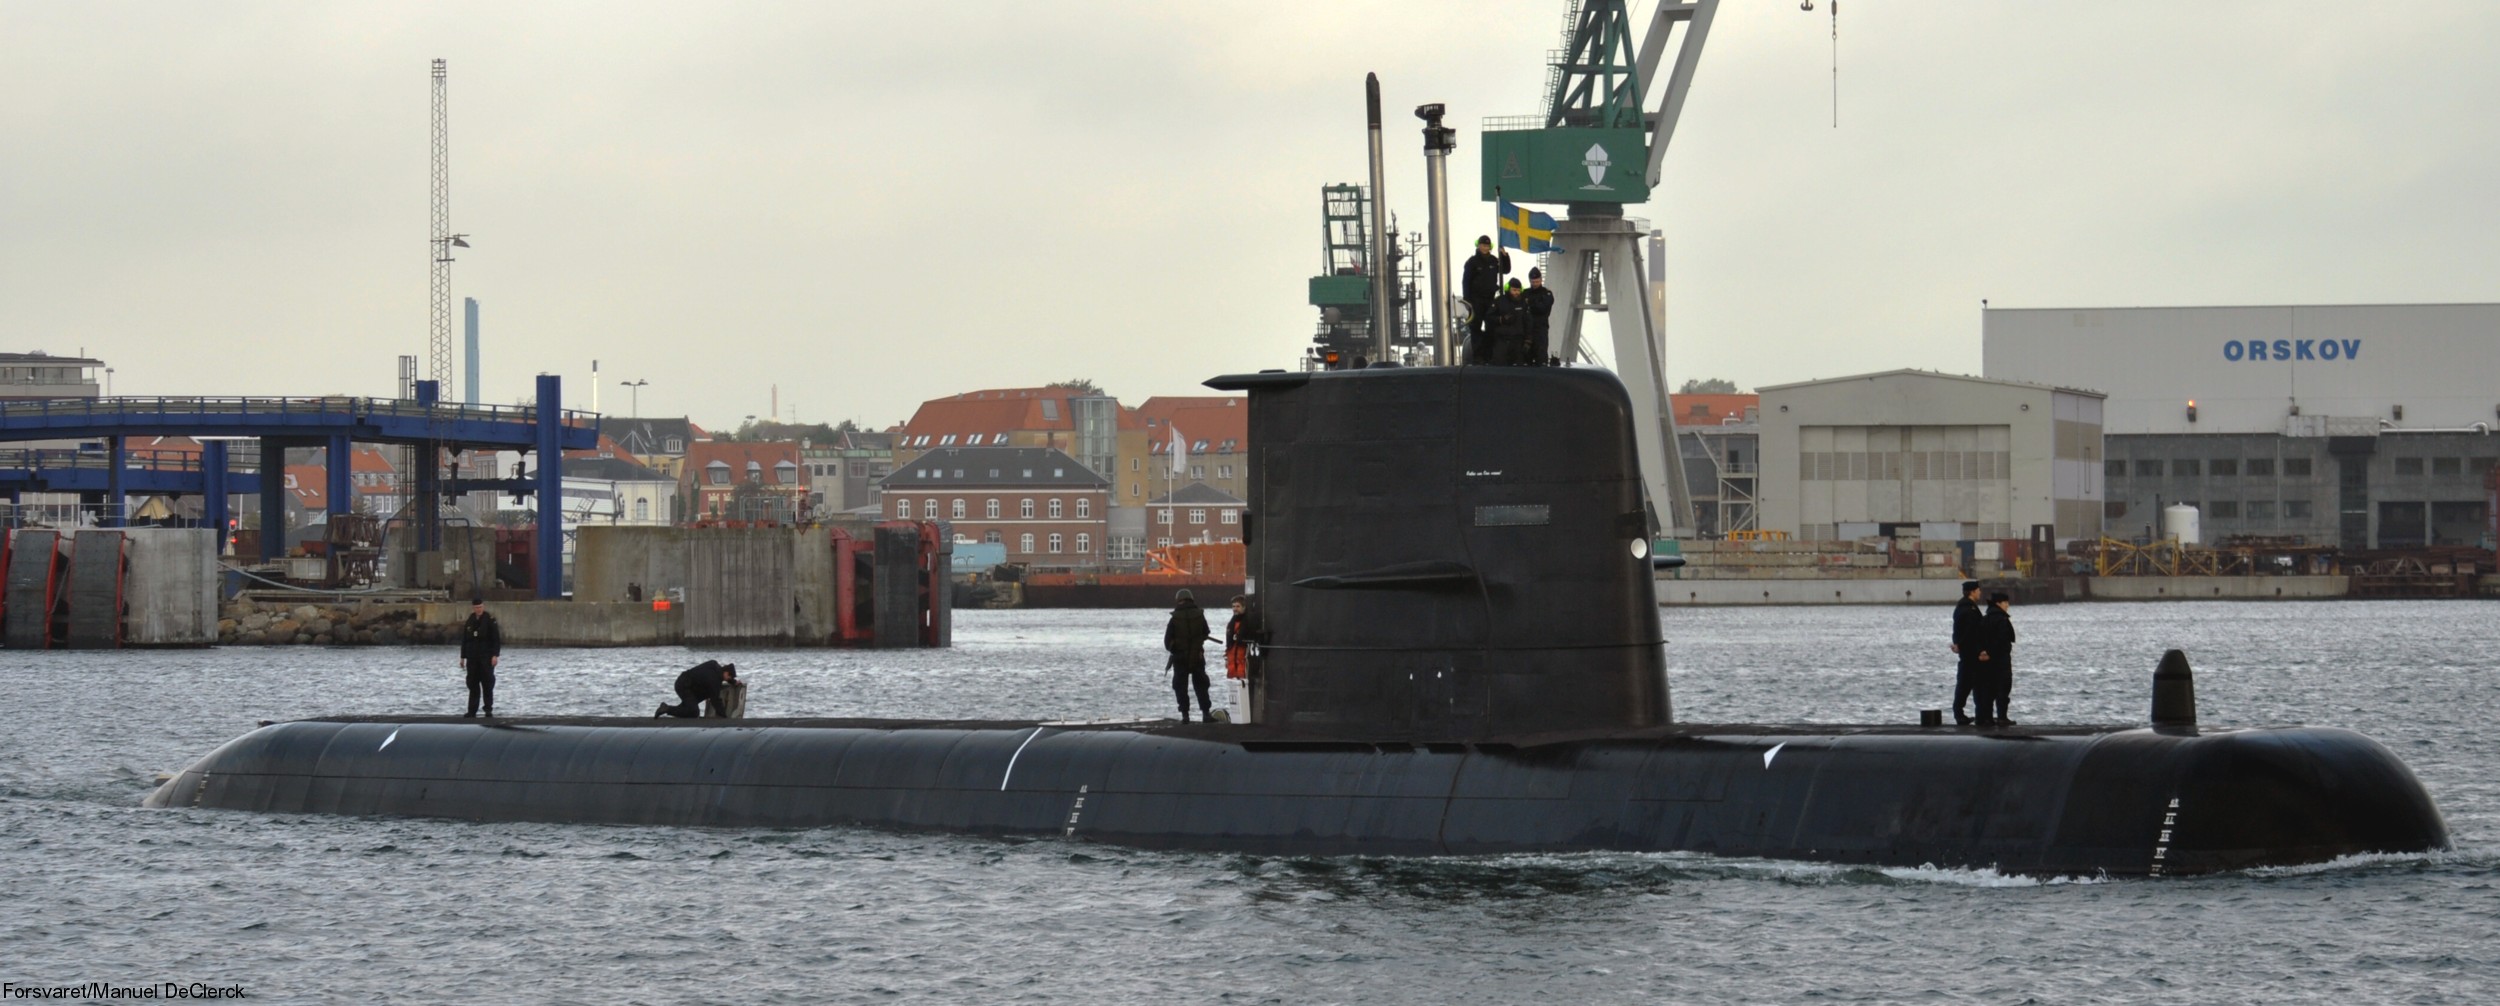 hswms hms gotland gtd class submarine ssk swedish navy svenska marinen försvarsmakten kockums 25